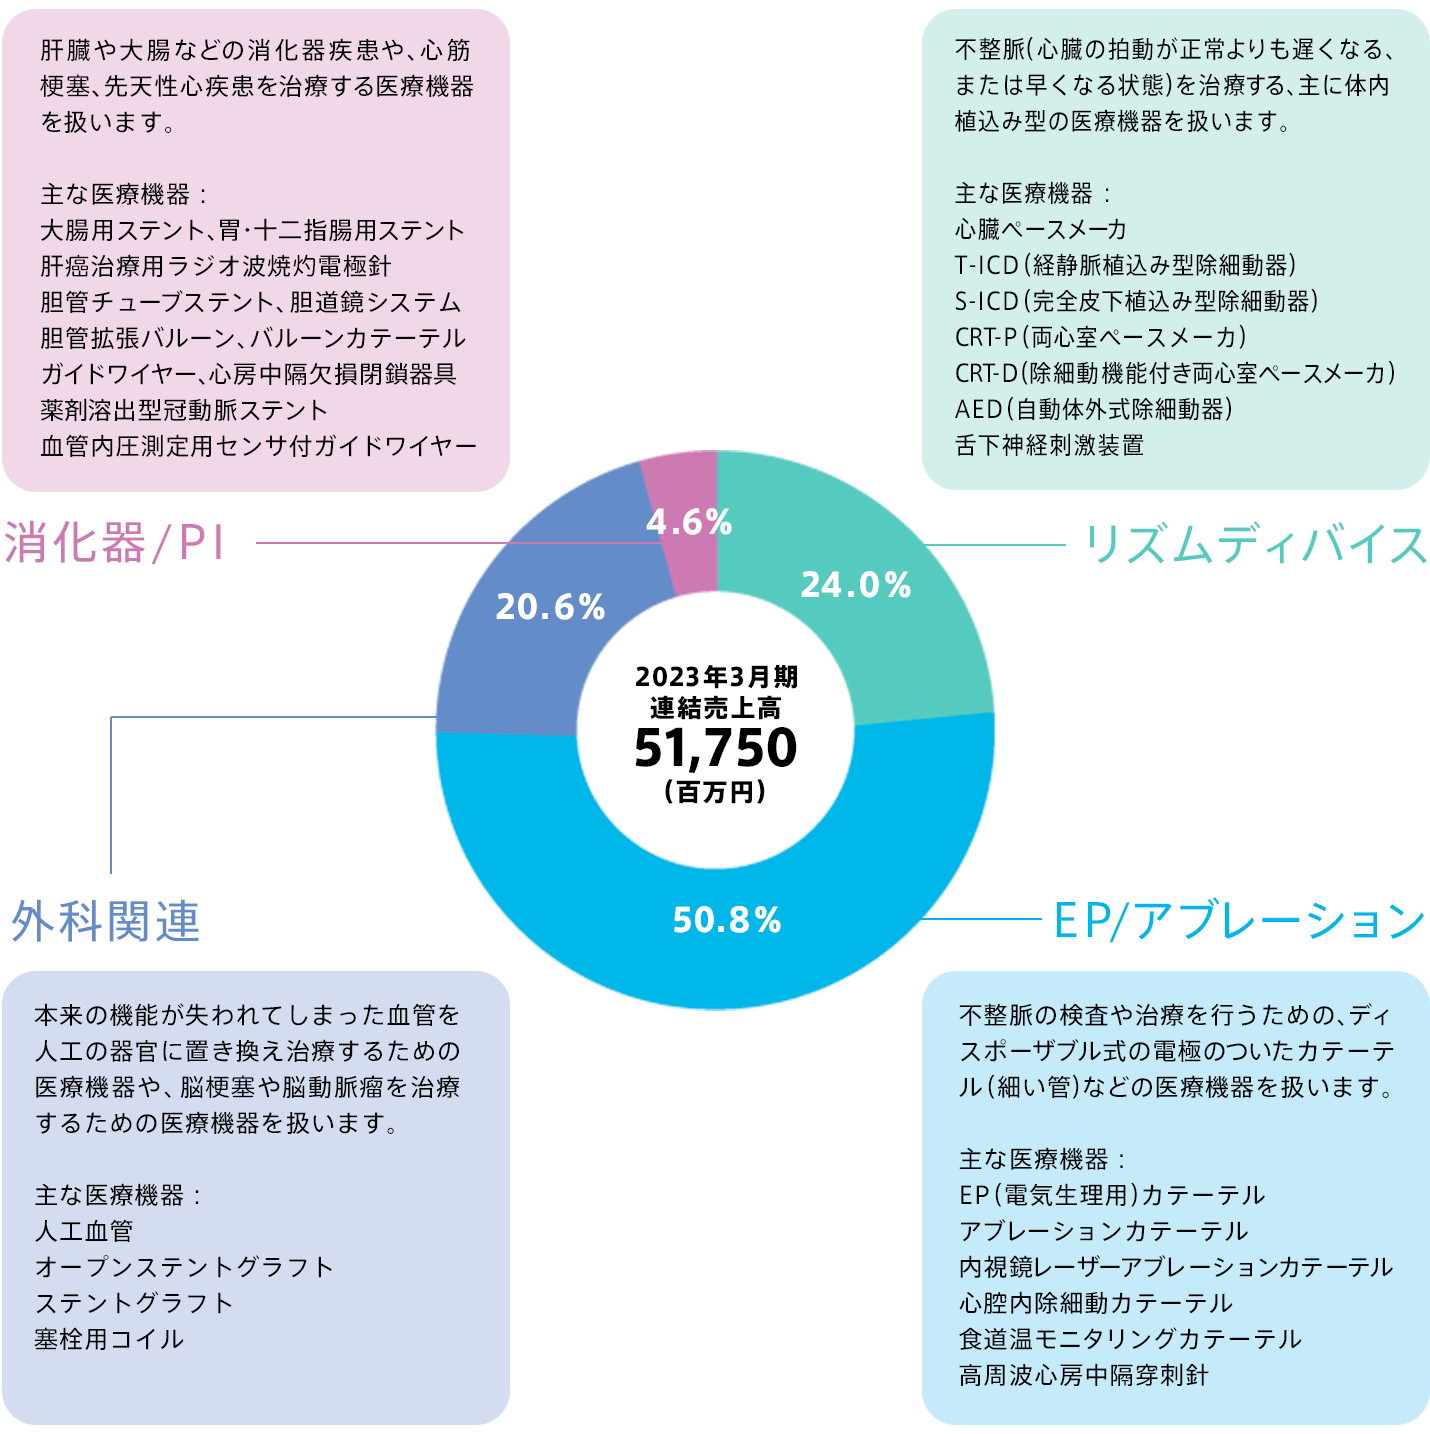 日本ライフラインの事業領域